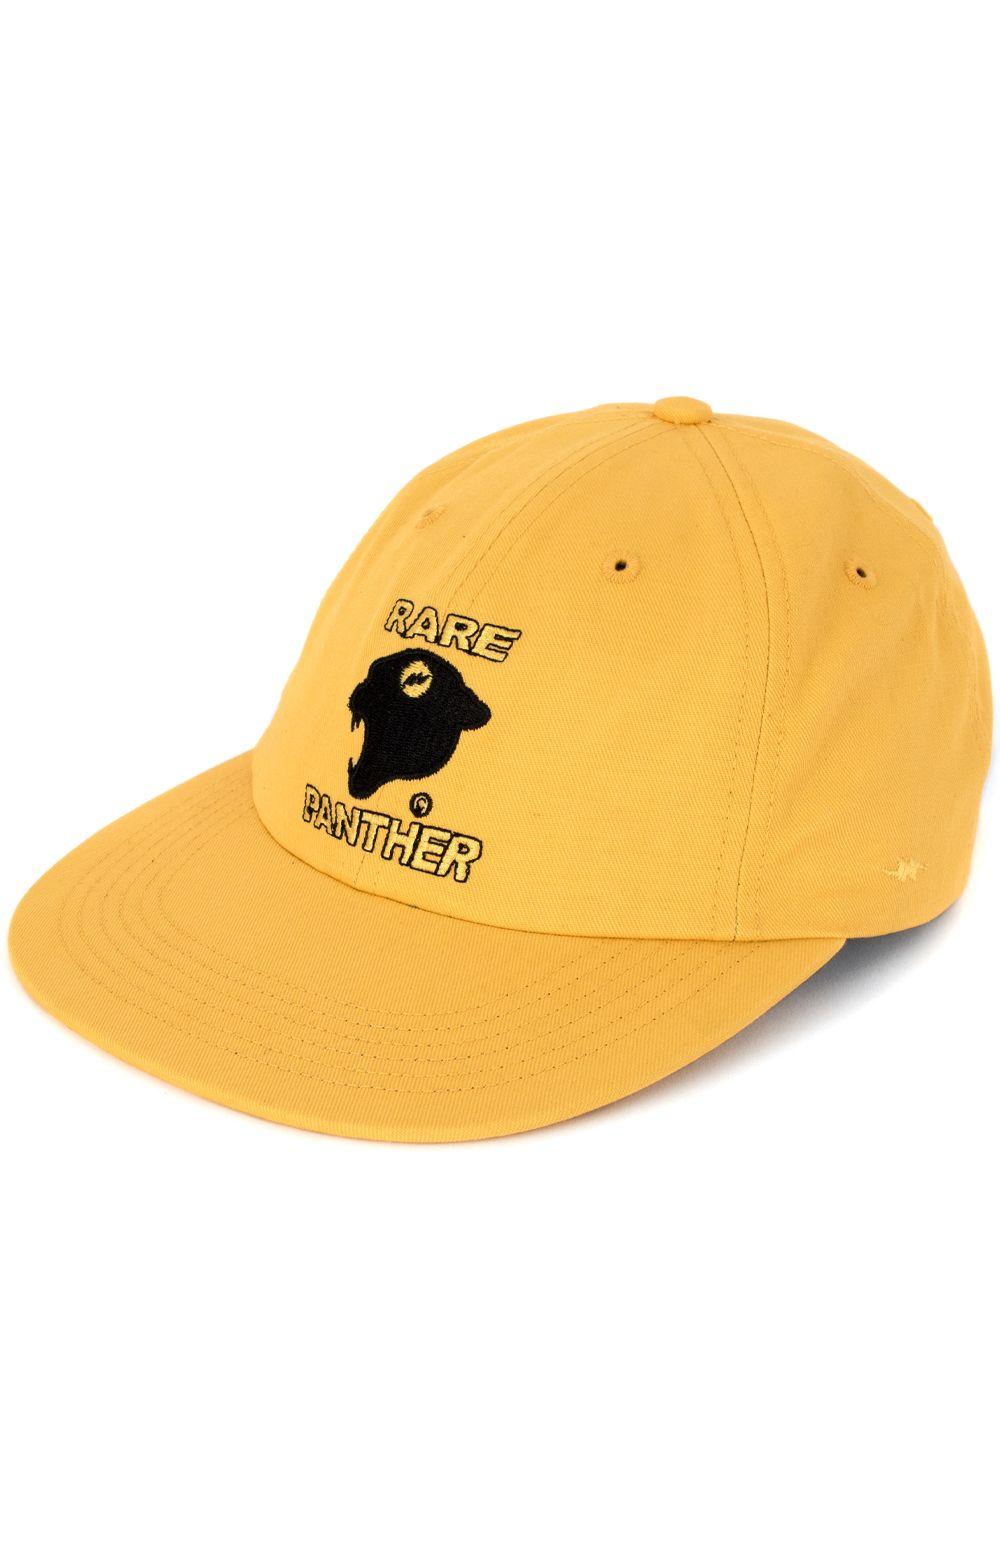 Yellow Panther Logo - Rare Panther, Logo Strap Back Hat